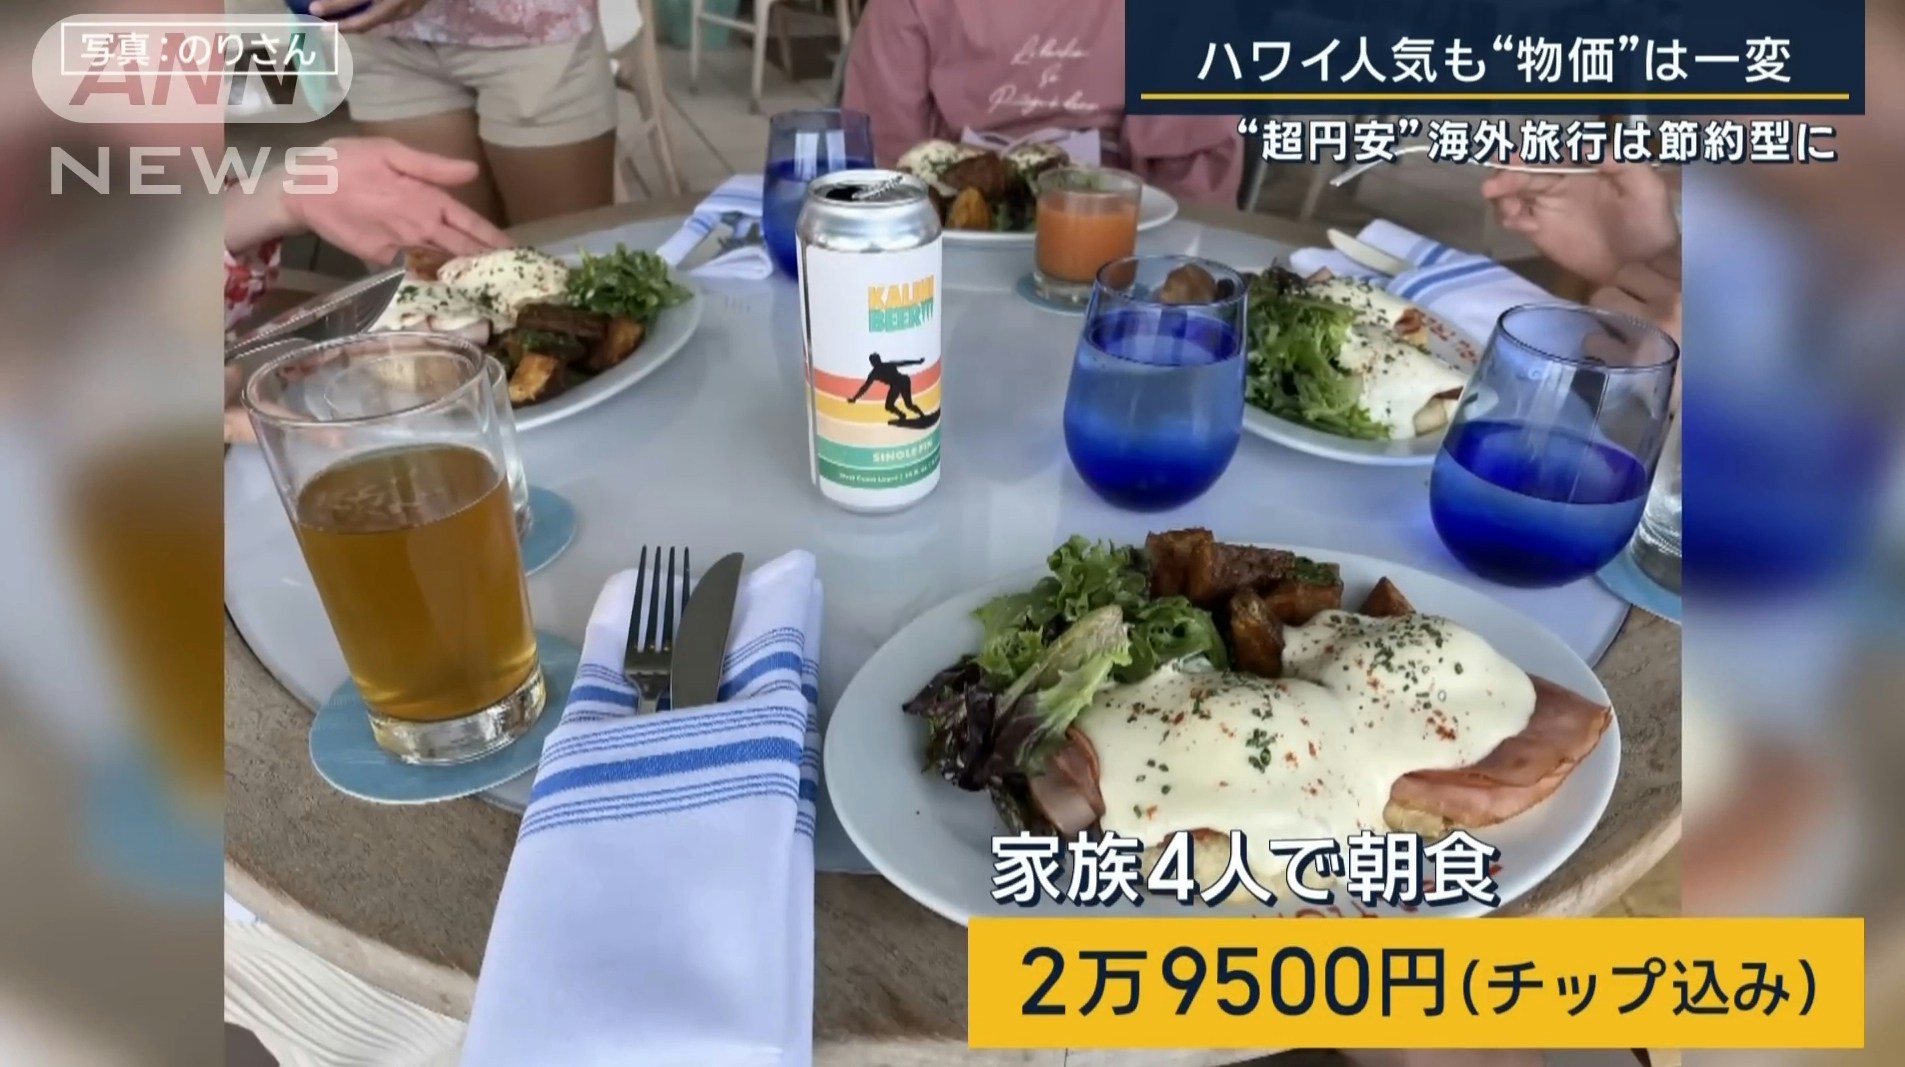 黄金周连假，日本人兴奋至海外旅游，但为了节省花费，有民众出国带著白米饭、泡面，想自行烹饪解决餐食，或是减少逛街购物的行程。（YouTube@ANNnewsCH）